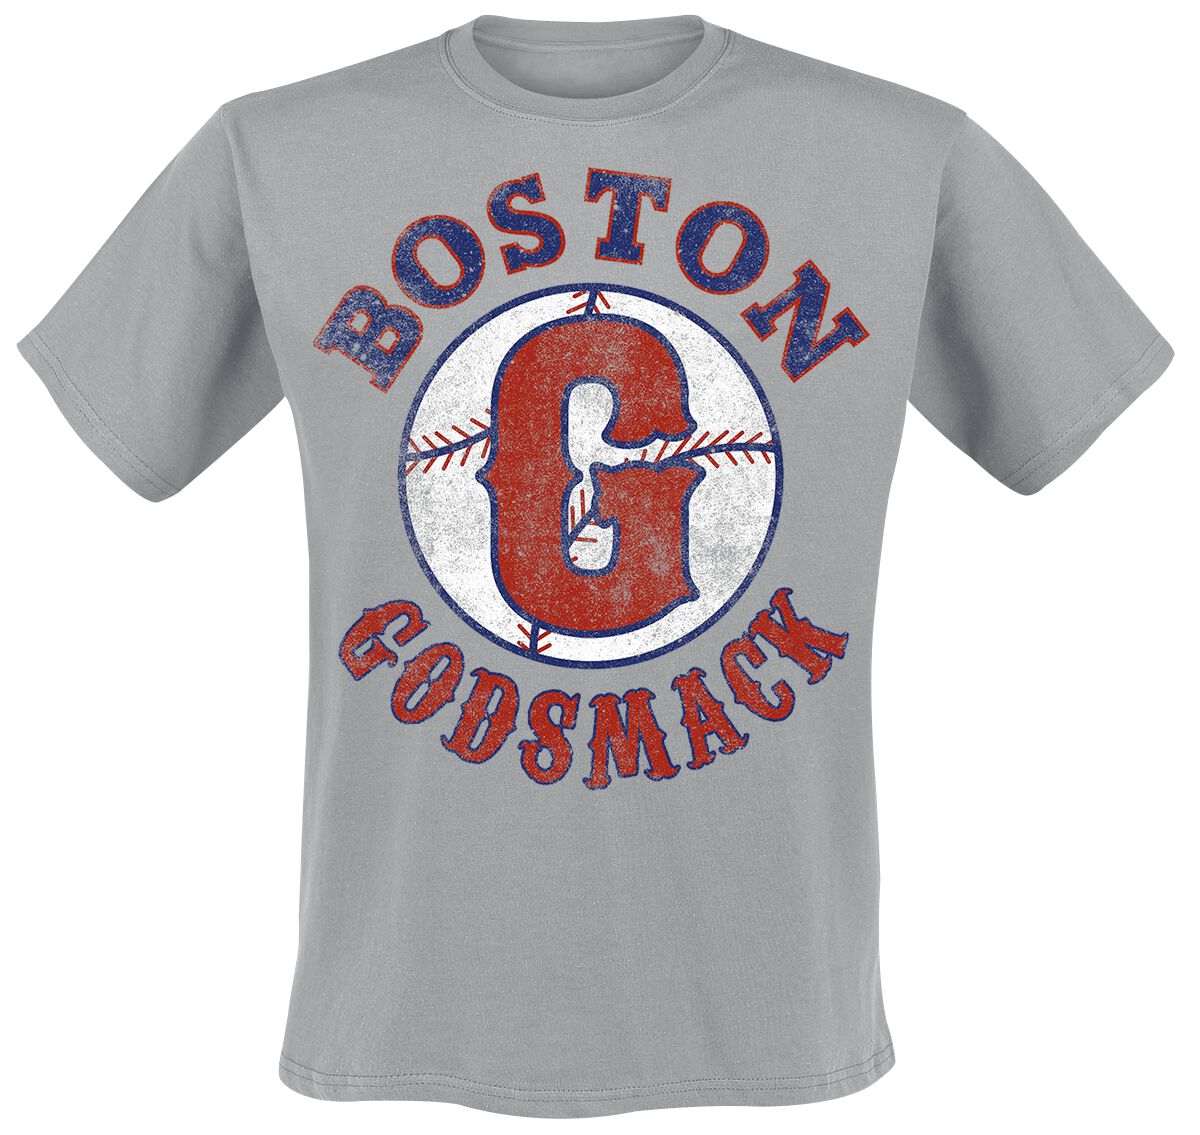 Godsmack T-Shirt - Boston - S bis M - für Männer - Größe M - grau  - Lizenziertes Merchandise!